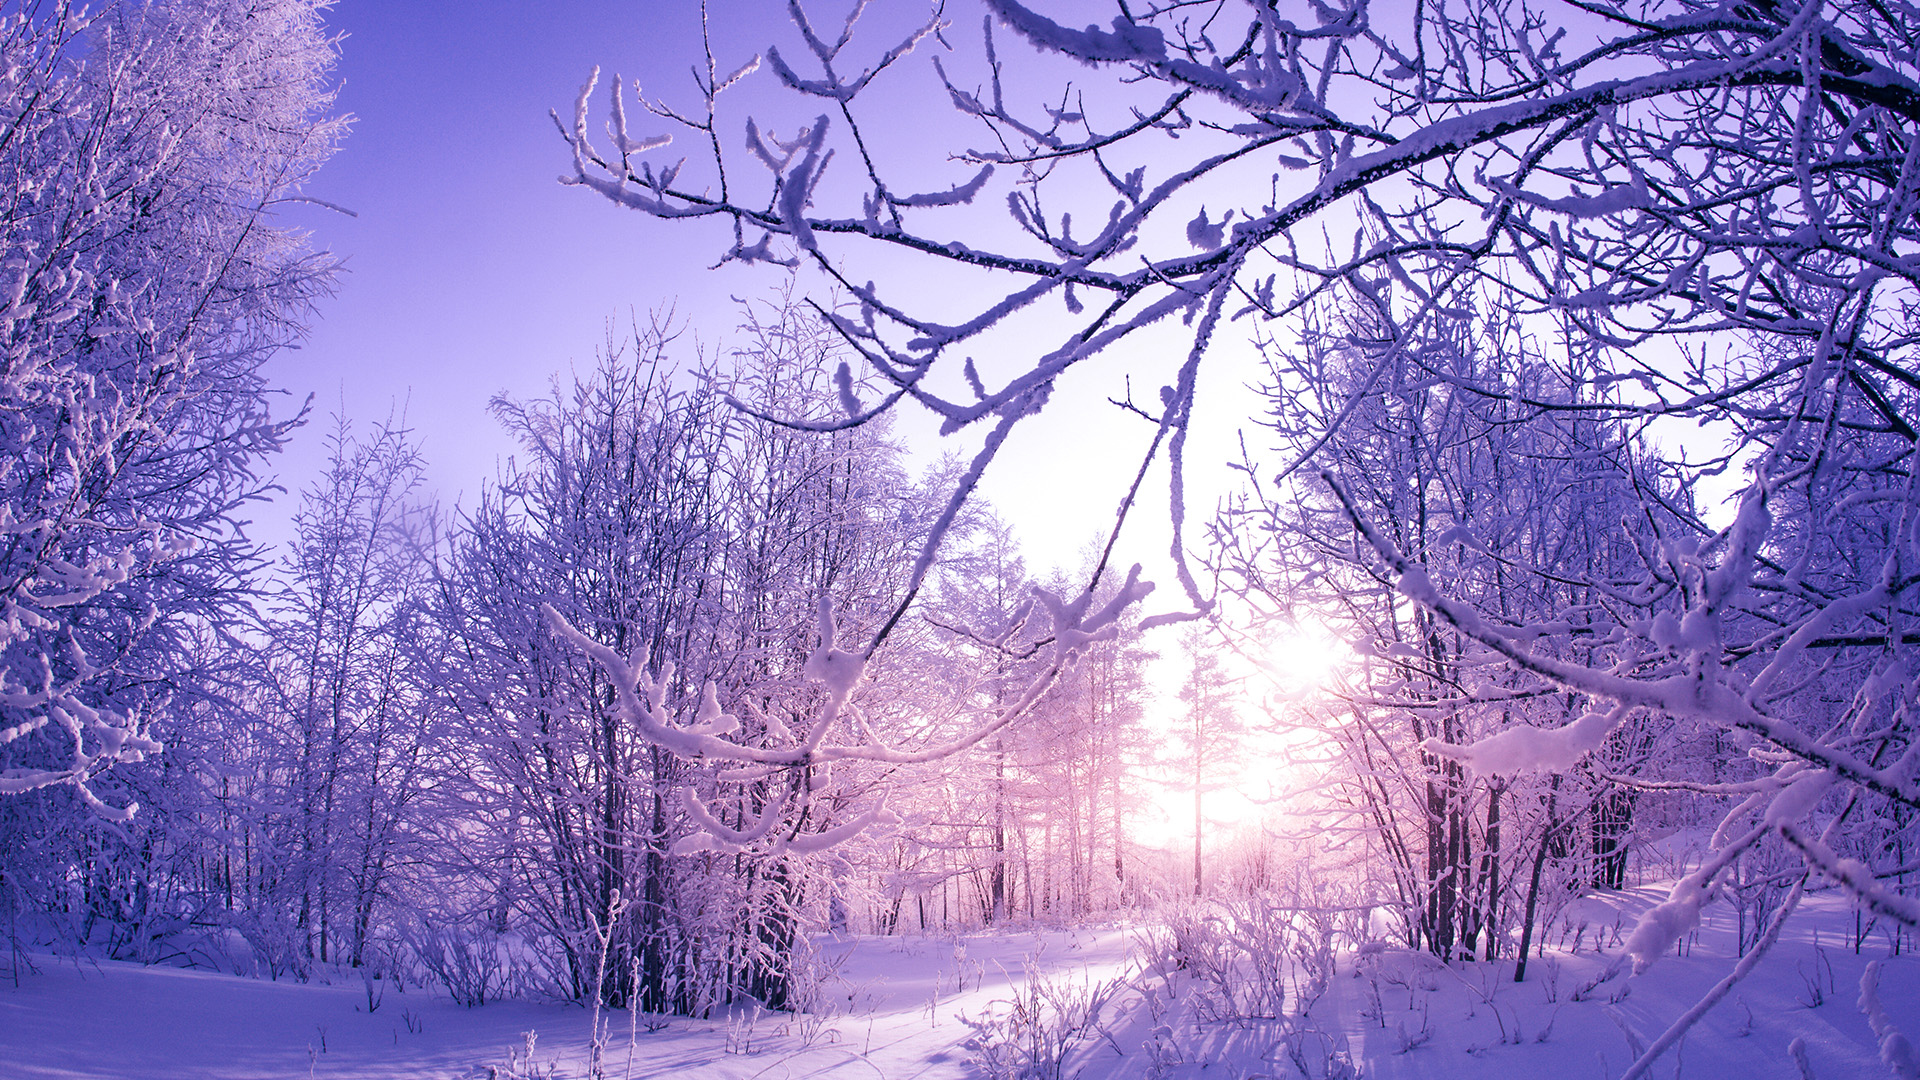 Скачать обои бесплатно Зима, Снег, Лес, Восход Солнца, Земля/природа картинка на рабочий стол ПК